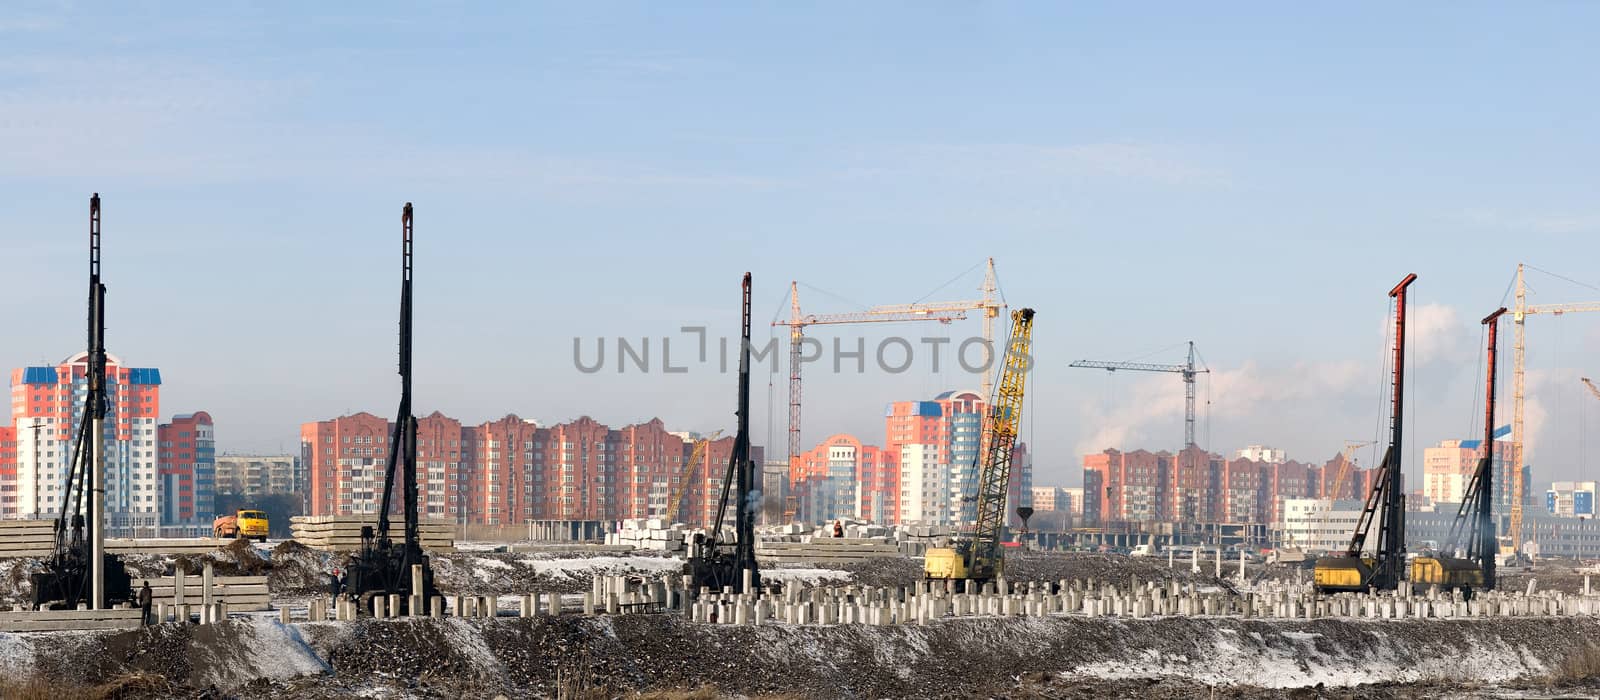 Construction by Ohotnik